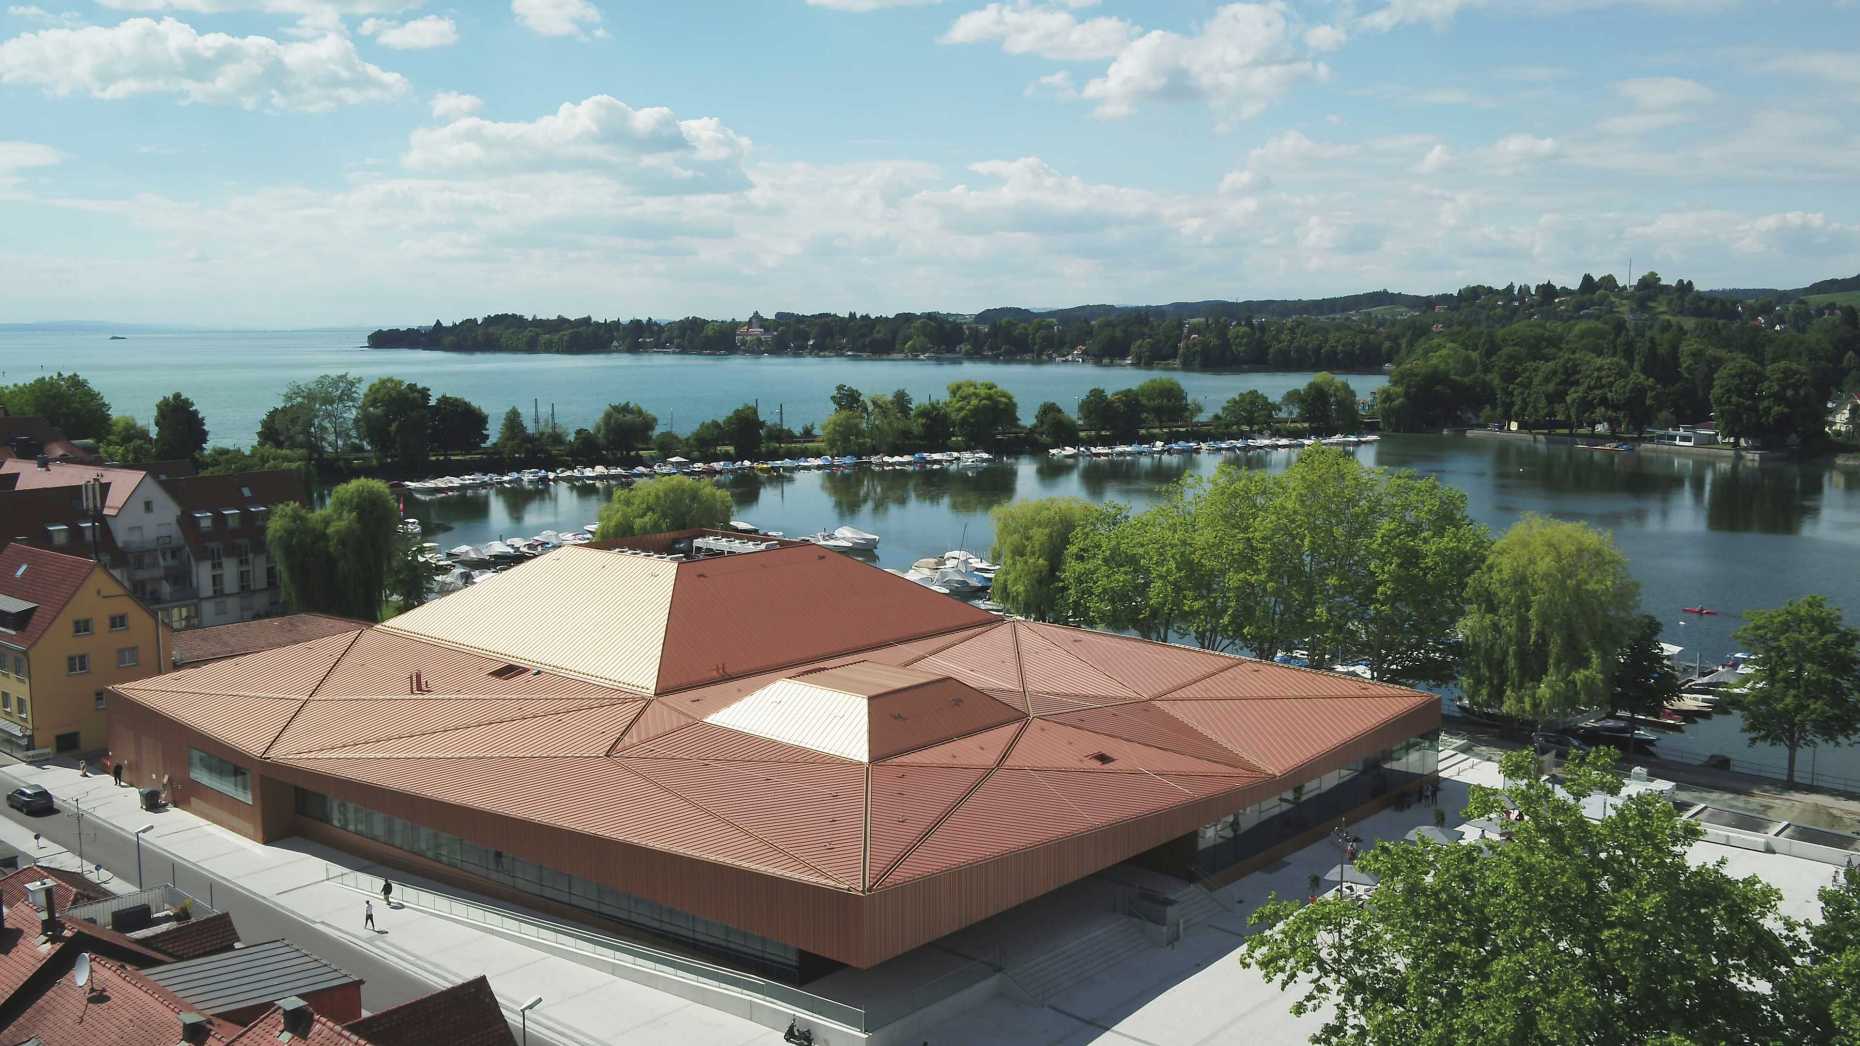 Enlarged view: The meeting venue Inselhalle in Lindau, 19.06.2019, Lindau, Germany, Picture/Credit: Till Beckert/Lindau Nobel Laureate Meetings